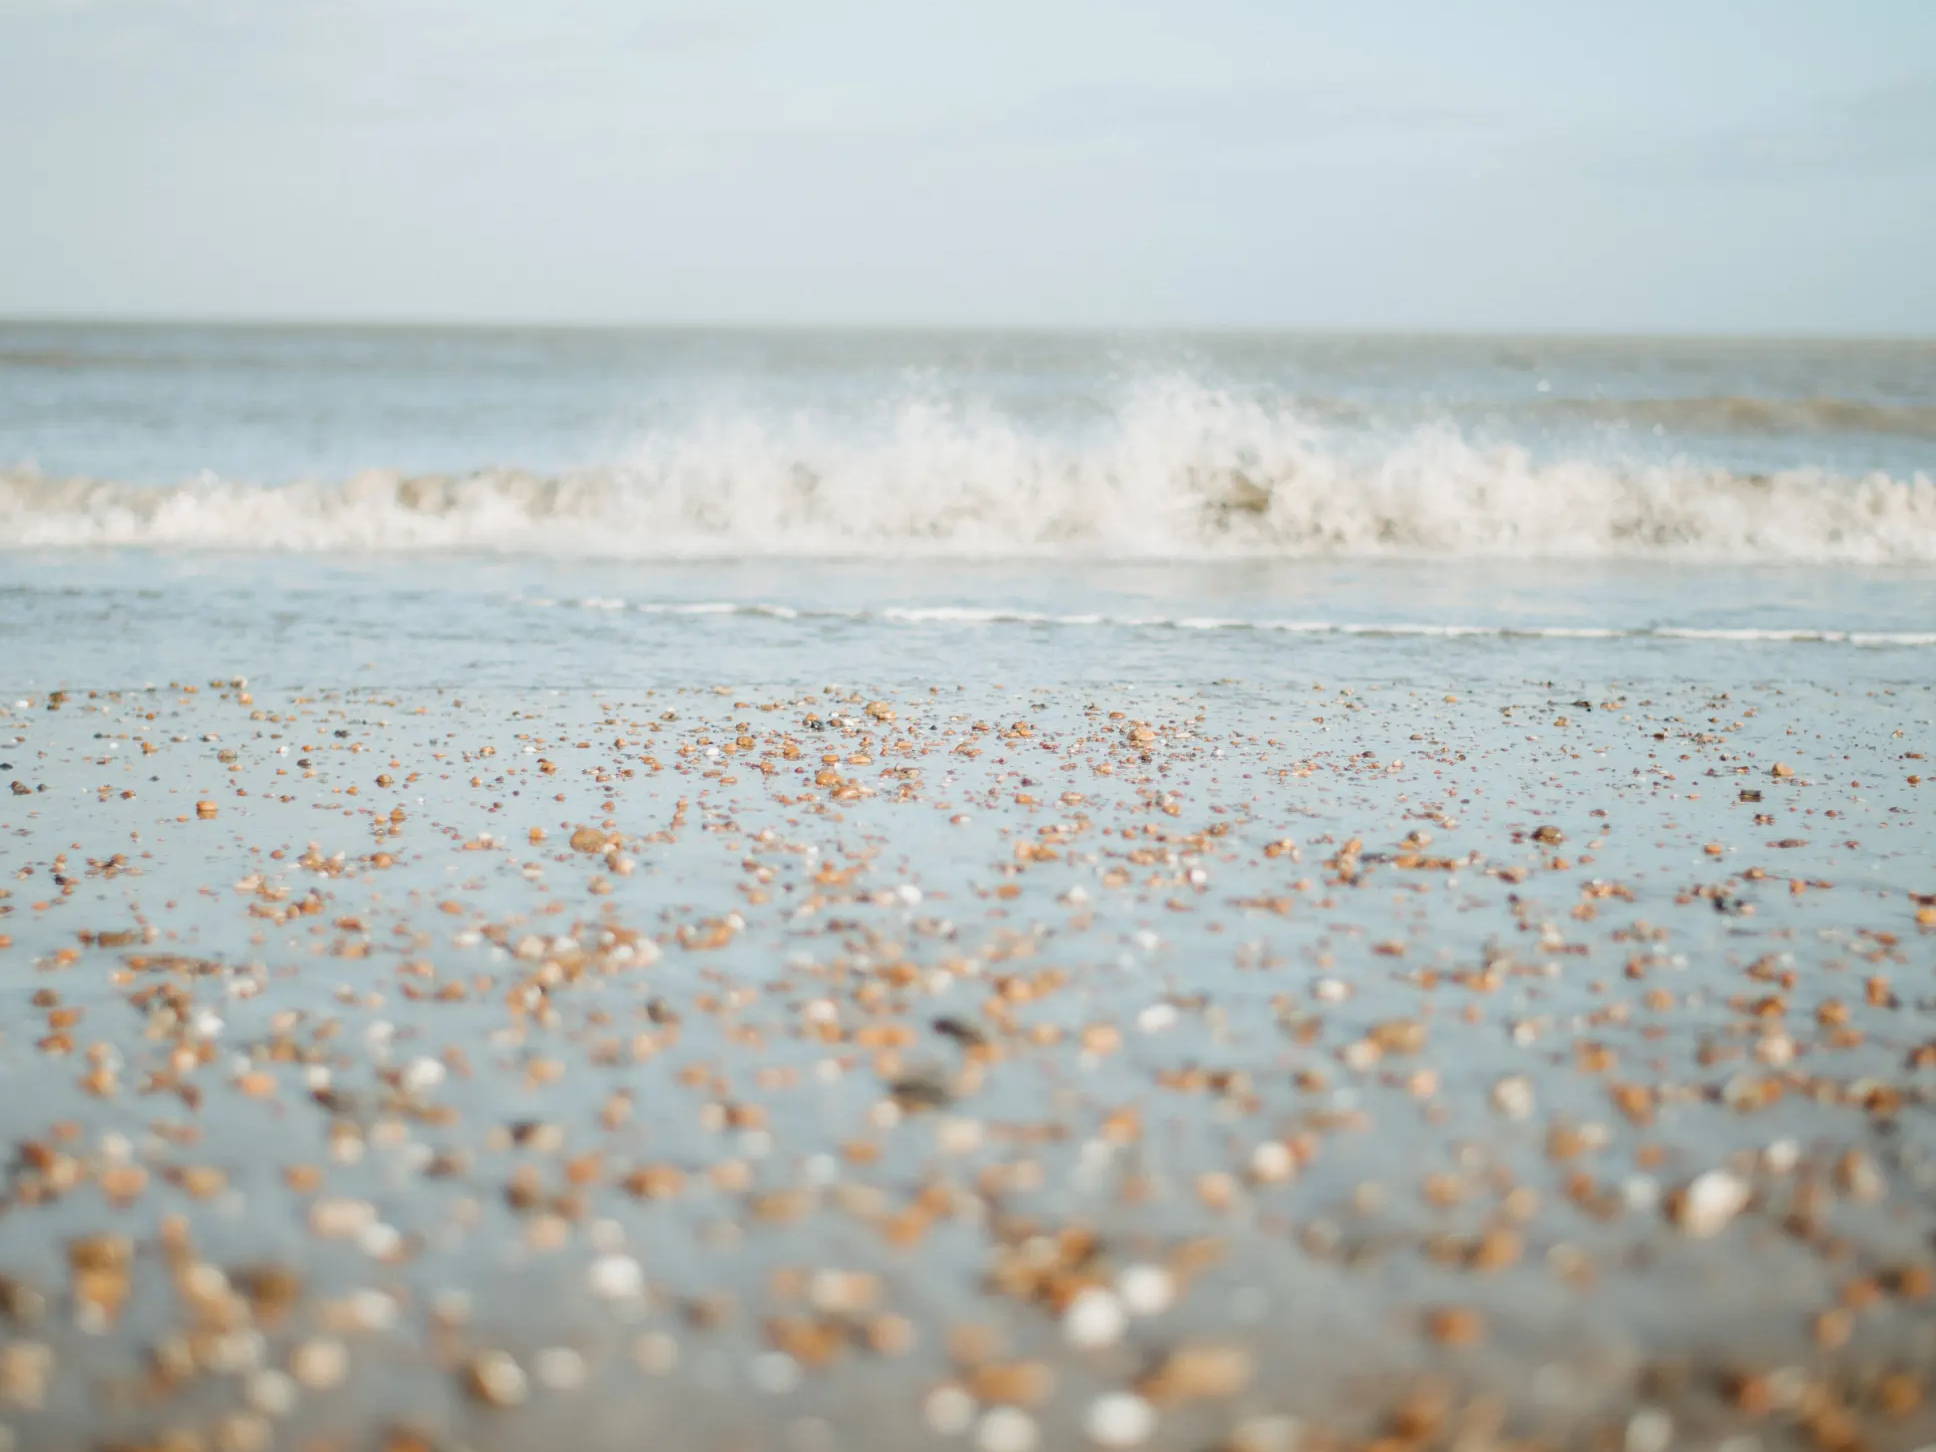 Pebbles and seashells on the shore a waves crash